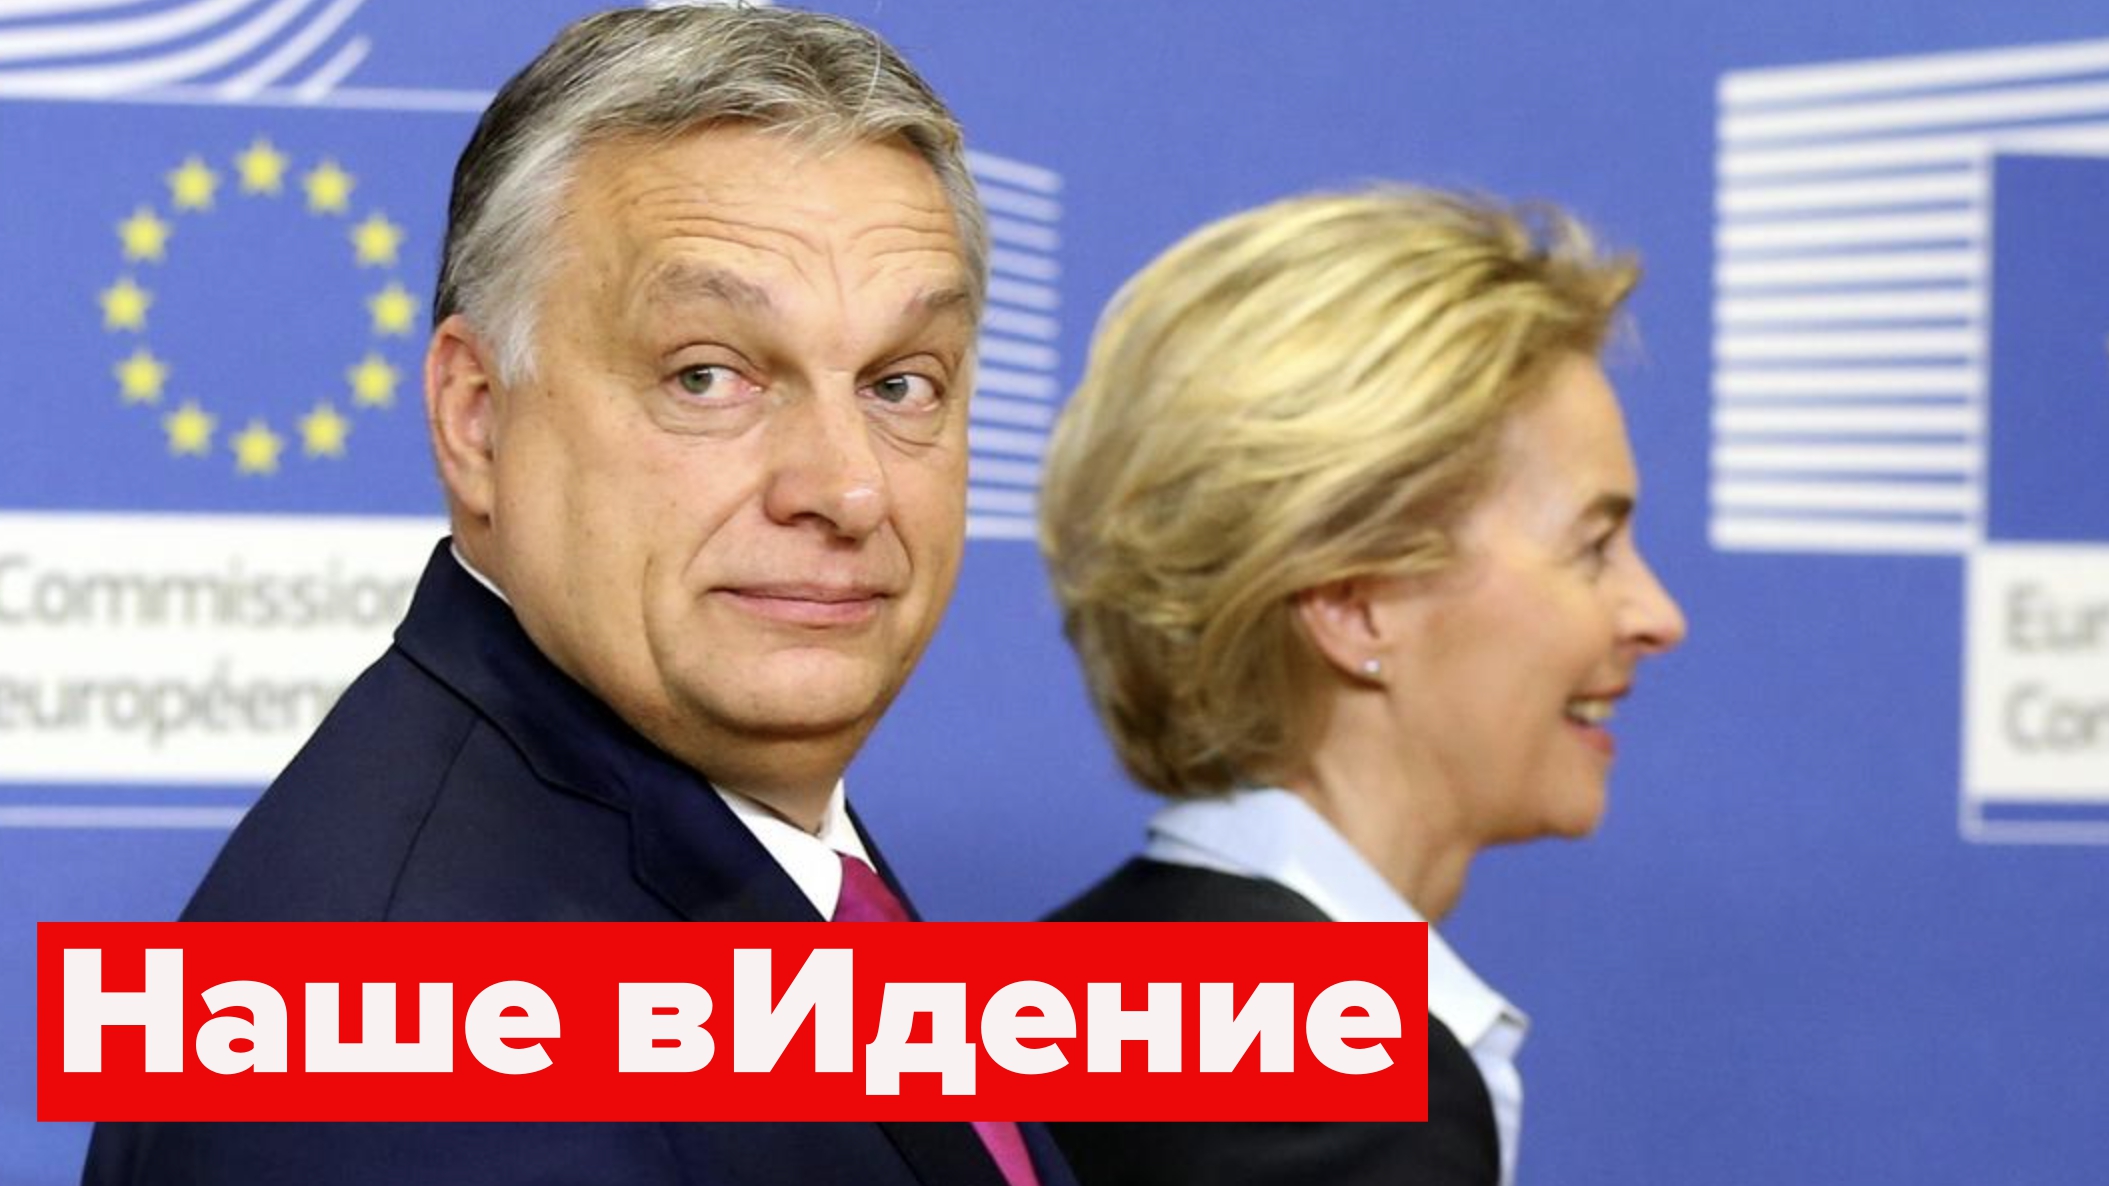 "Я провожу даму к выходу?" Виктор Орбан объявил войну Урсуле фон дер Ляйен